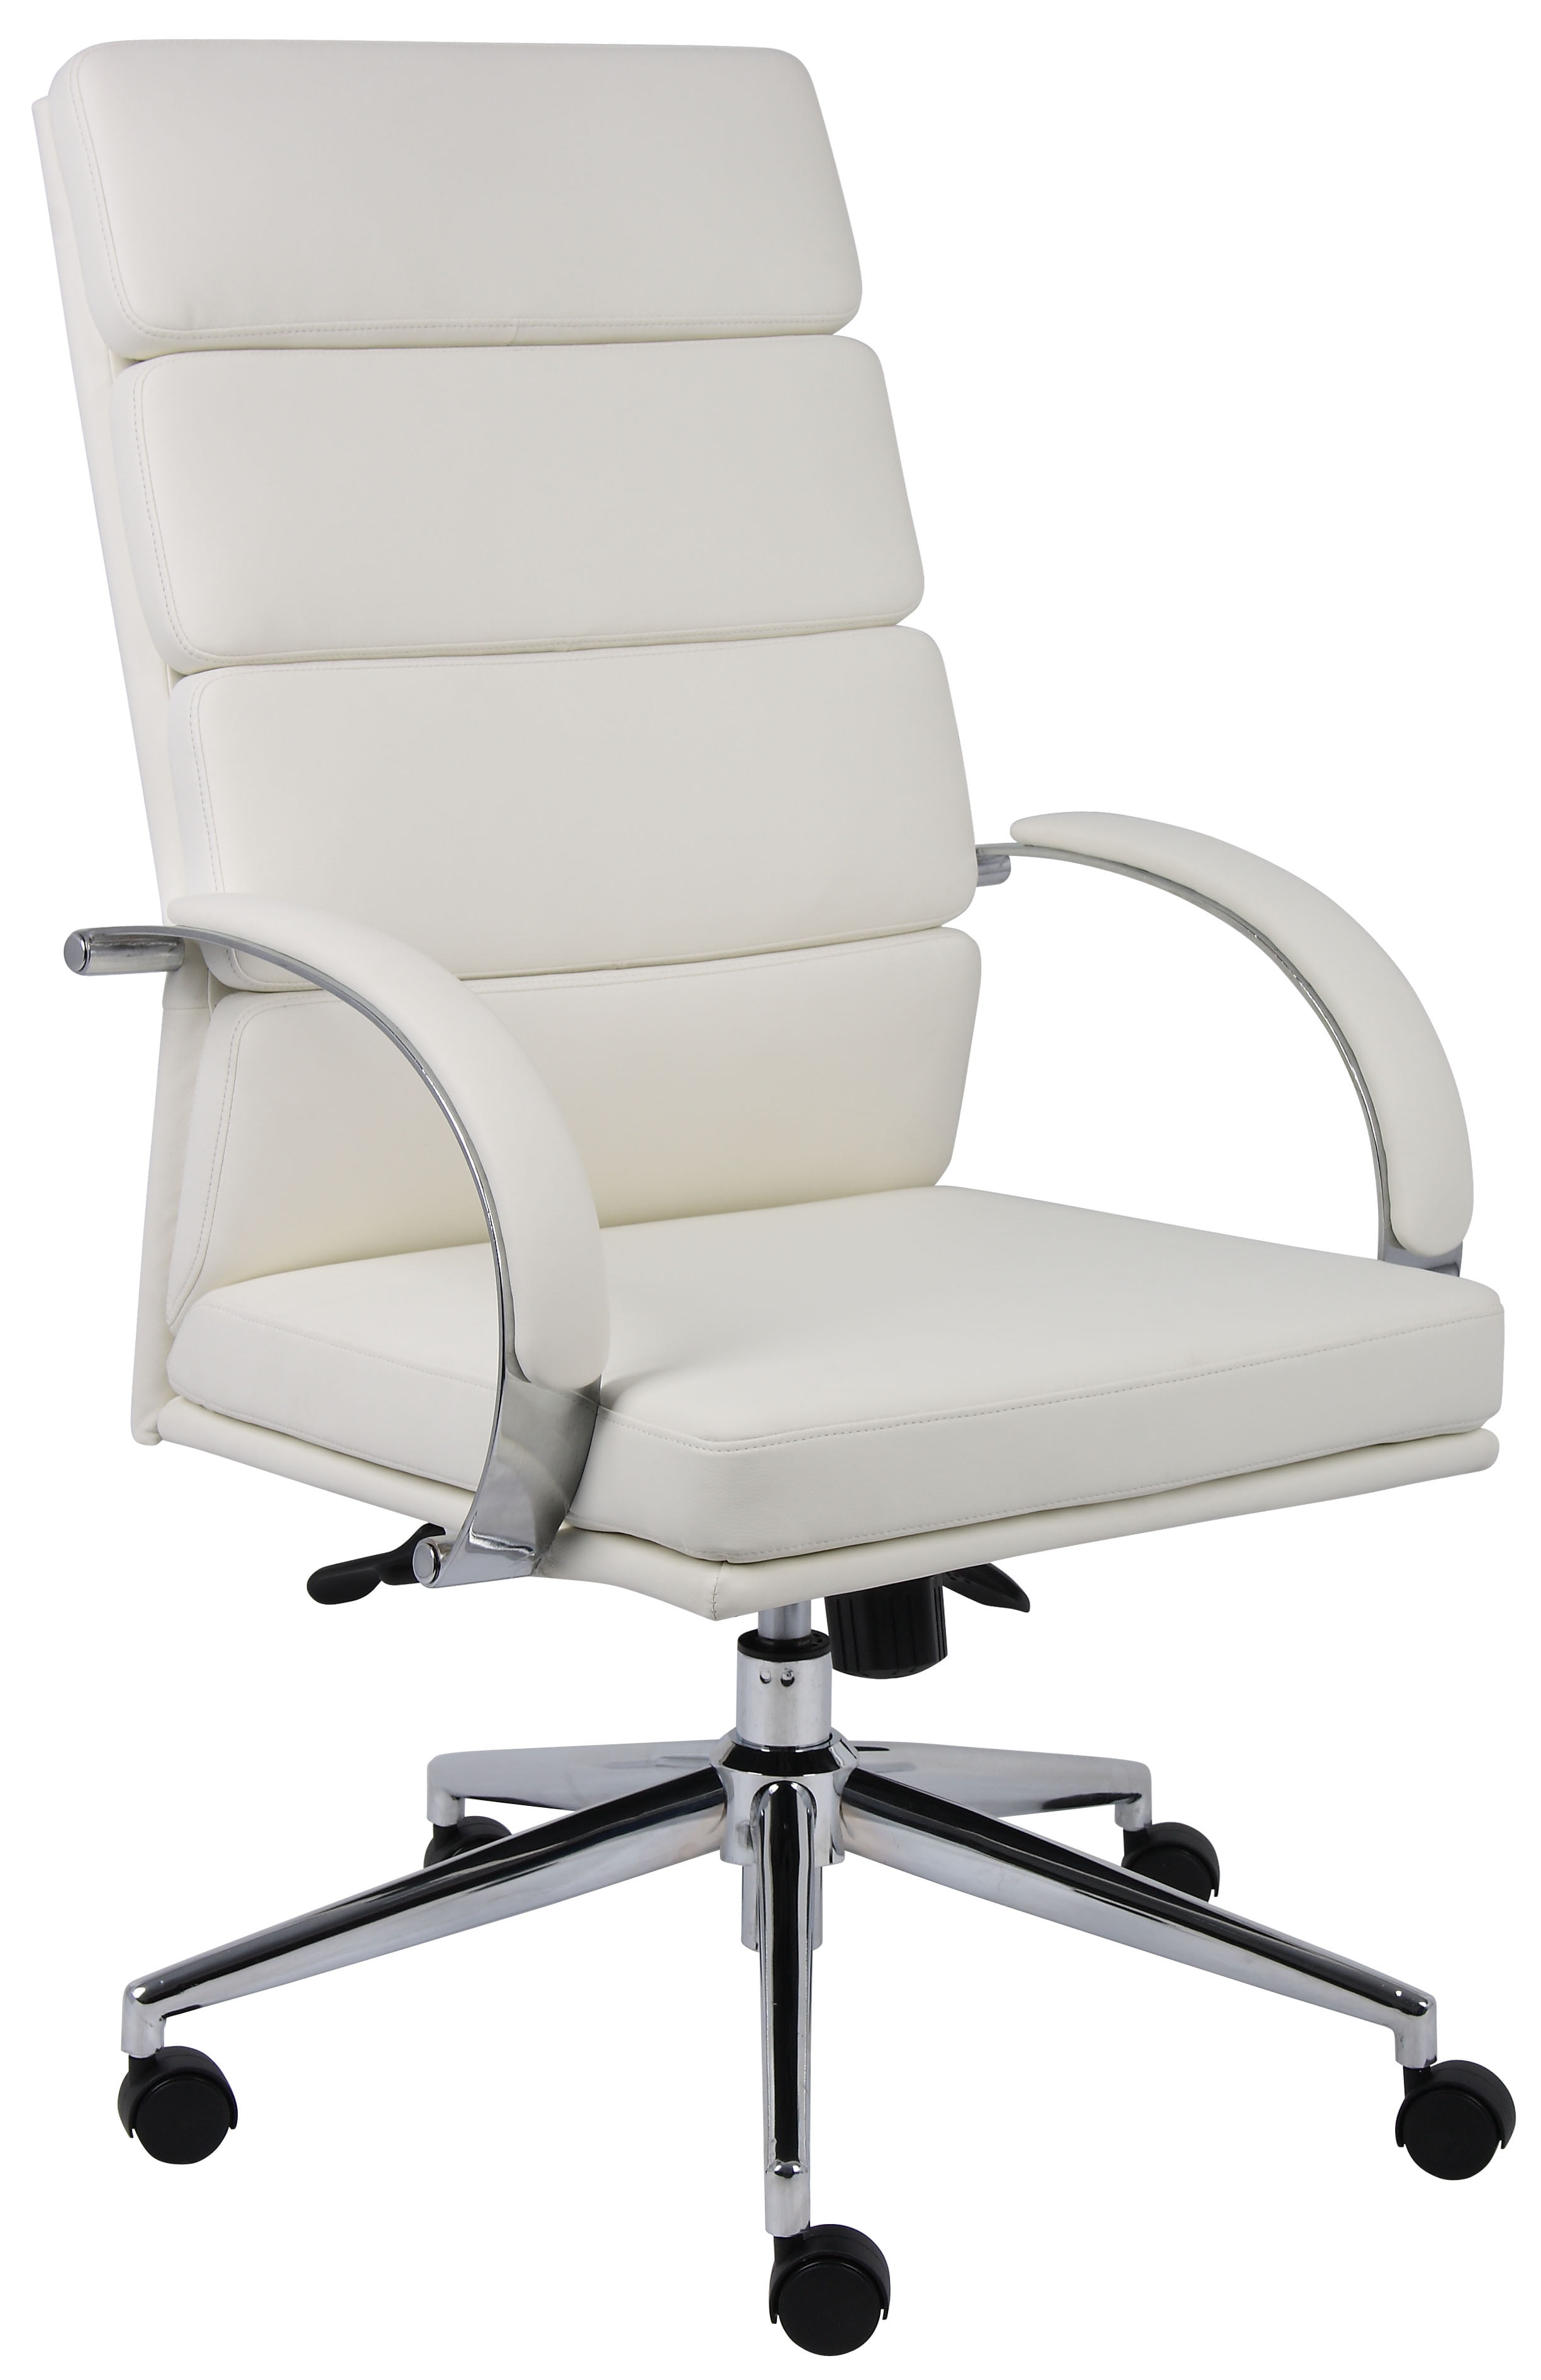 Стул рабочий офисный. Кресло офисное/Office Chair without Wheels. Кресло Boss 2. Кресло рабочее Boss BT-9767h (кожа). Офисное кресло Дэфо белое.